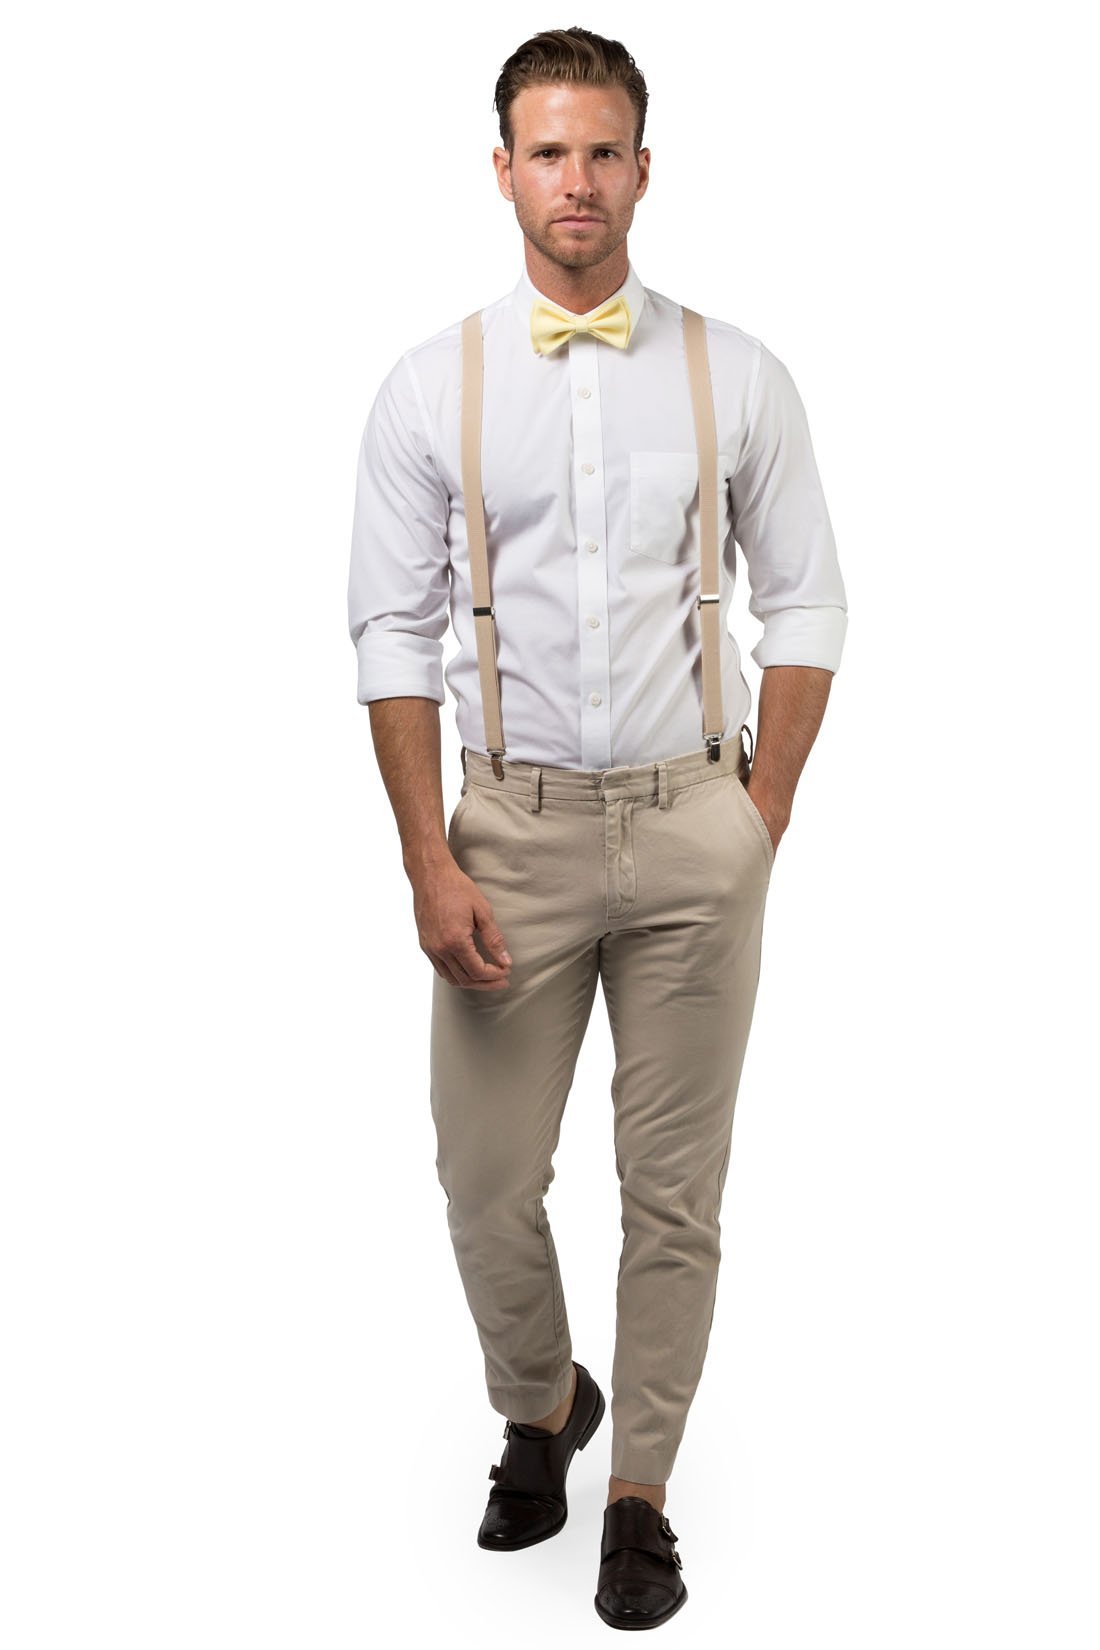 Beige Suspenders & Yellow Bow Tie - Baby to Adult Sizes– Armoniia